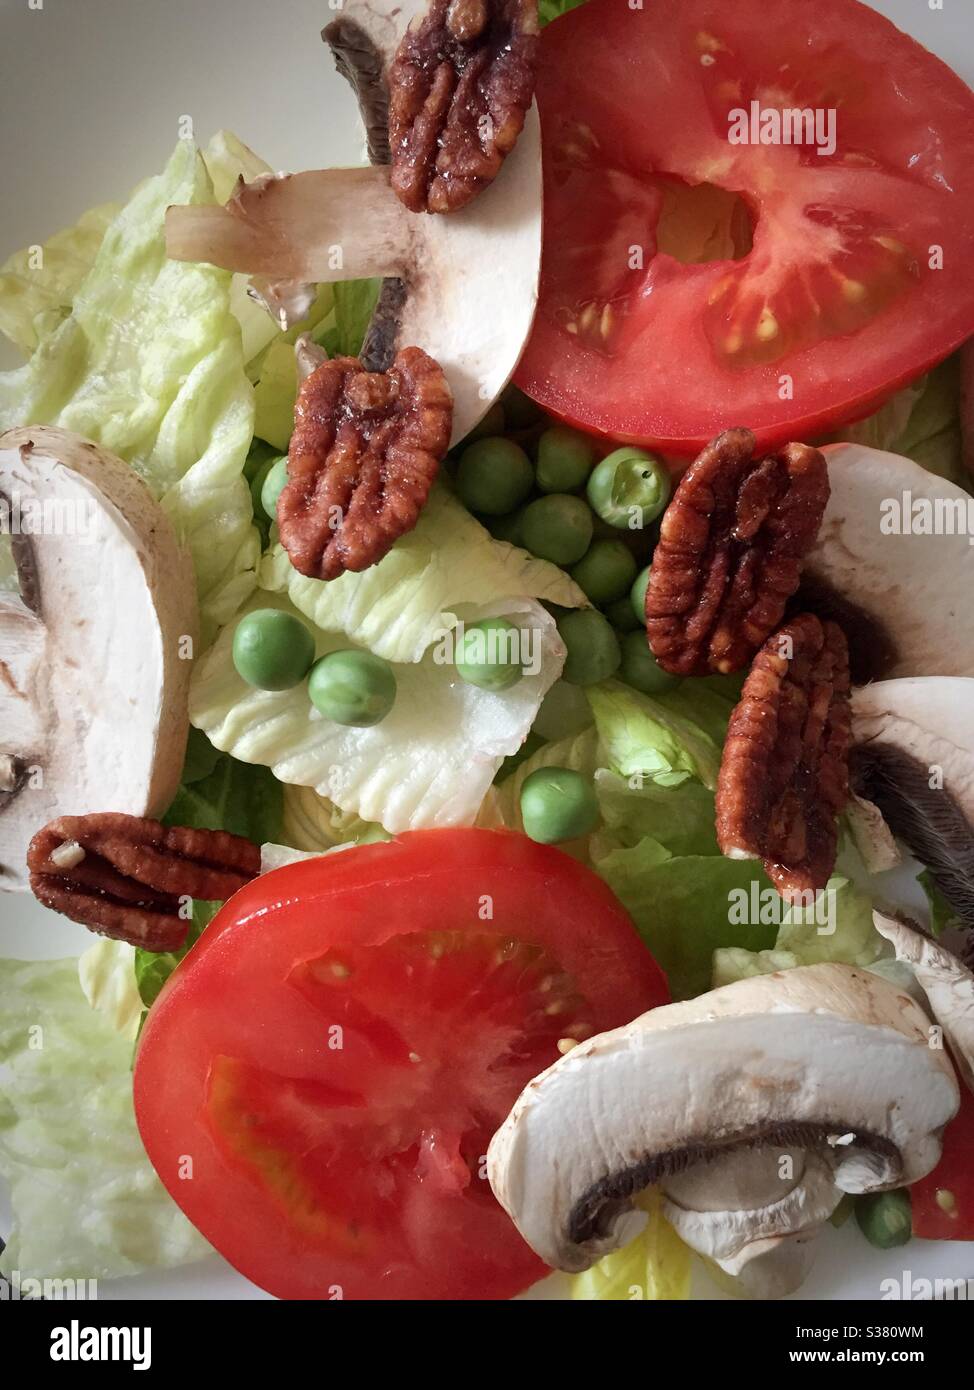 Flach legen Sie einen Gourmet-Salat mit Romaine-Salat, in Scheiben geschnittenen, gereiften Tomaten und kandierten Pekannüssen Stockfoto